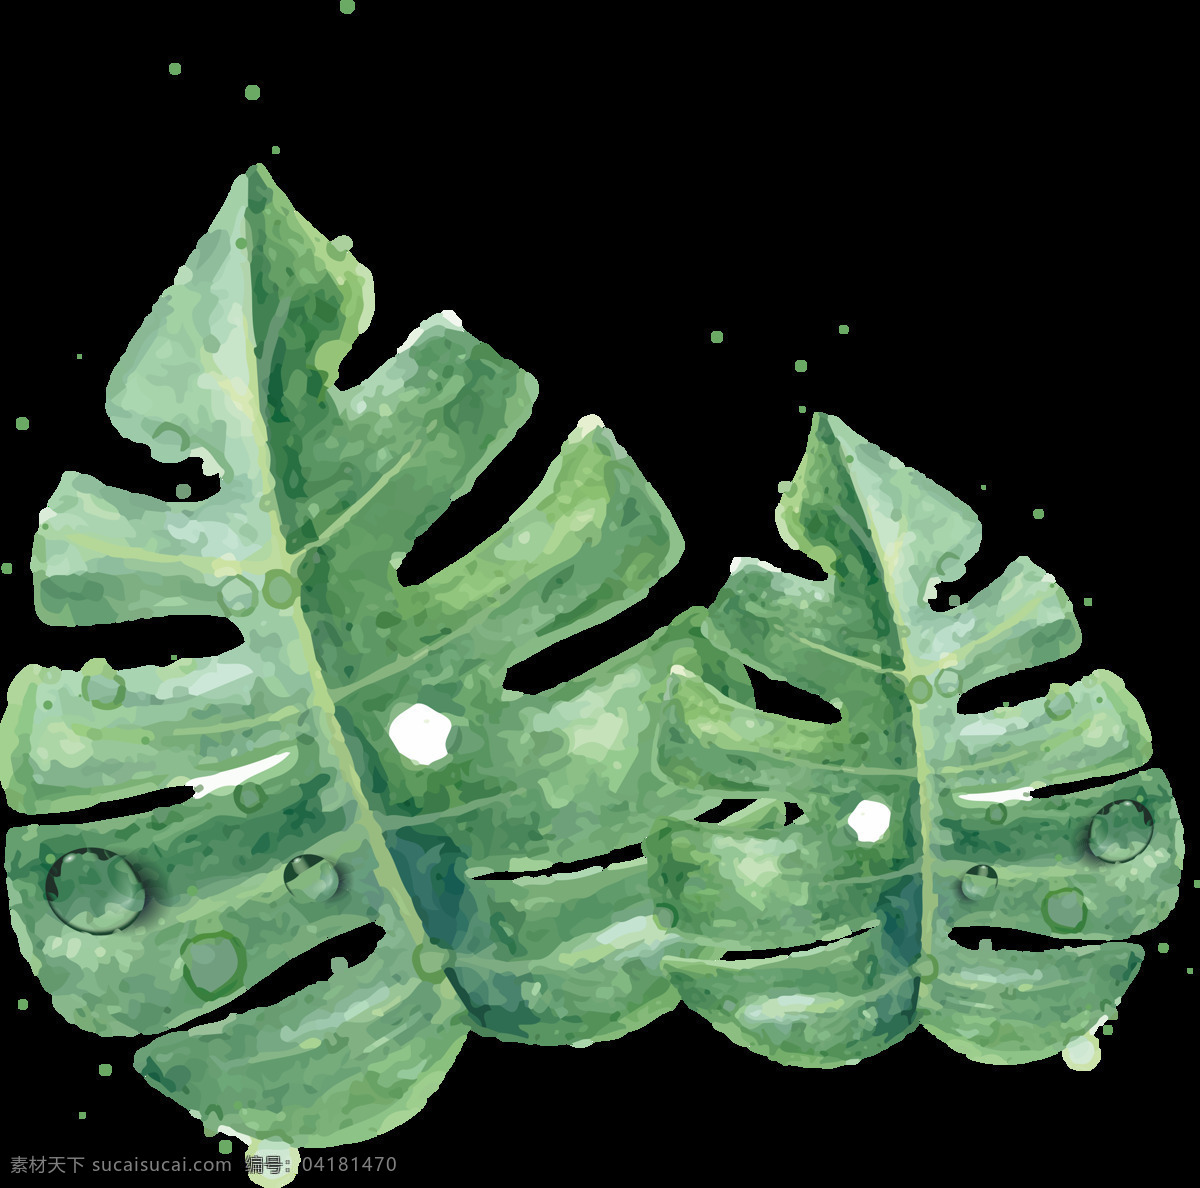 森 系 北欧 热带雨林 手绘 水彩 树叶 森系 动画 水粉 插画 免扣素材 设计素材 生物世界 花草